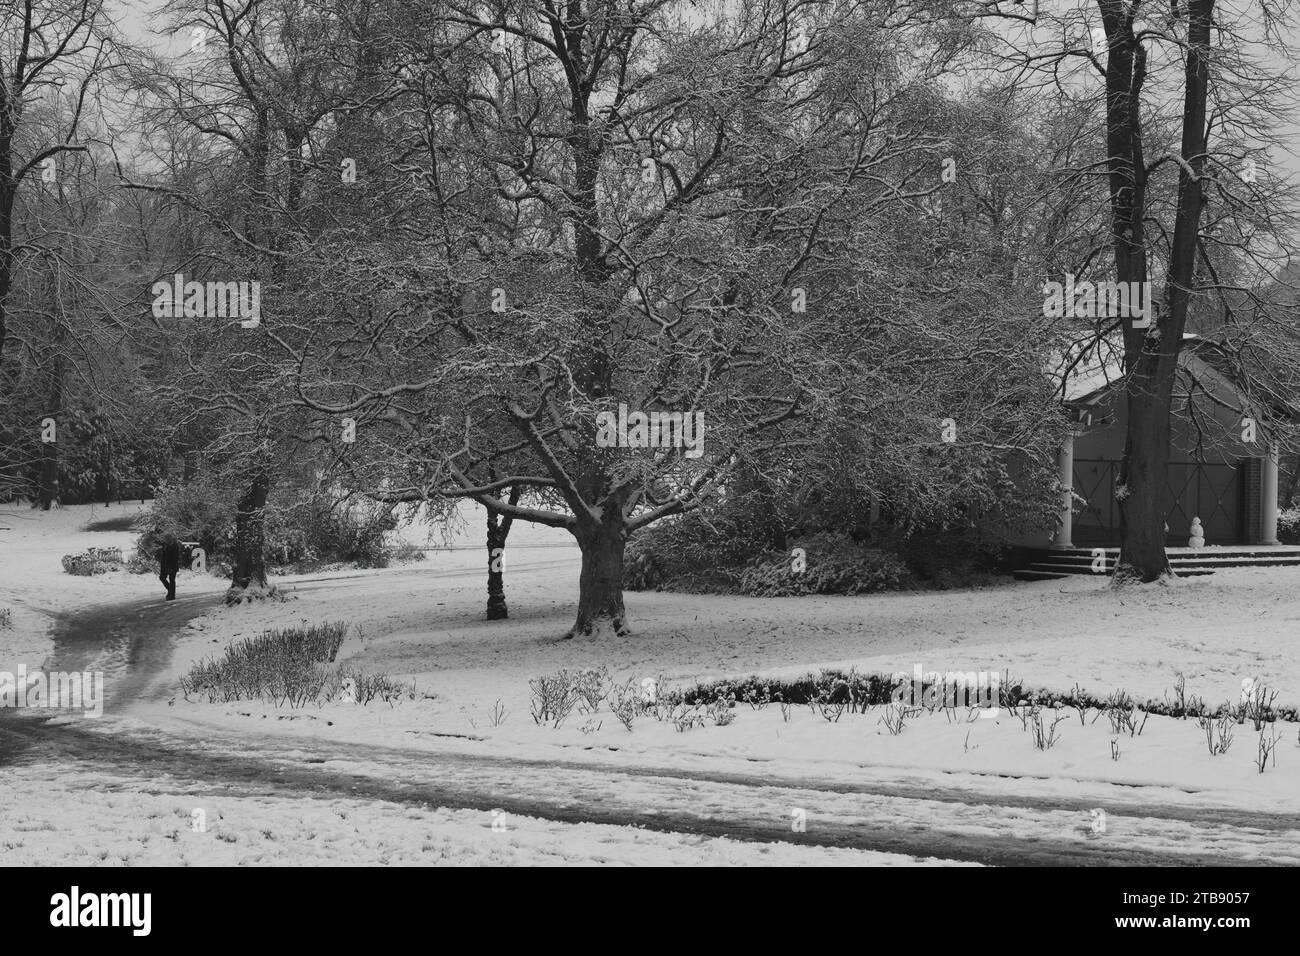 Blick auf den Wintry Park, mit einem schneebedeckten Baum und einem gewundenen Pfad. Ein entfernter Mensch bringt Leben in die heitere Winterszene, Harrogate, Großbritannien. Stockfoto